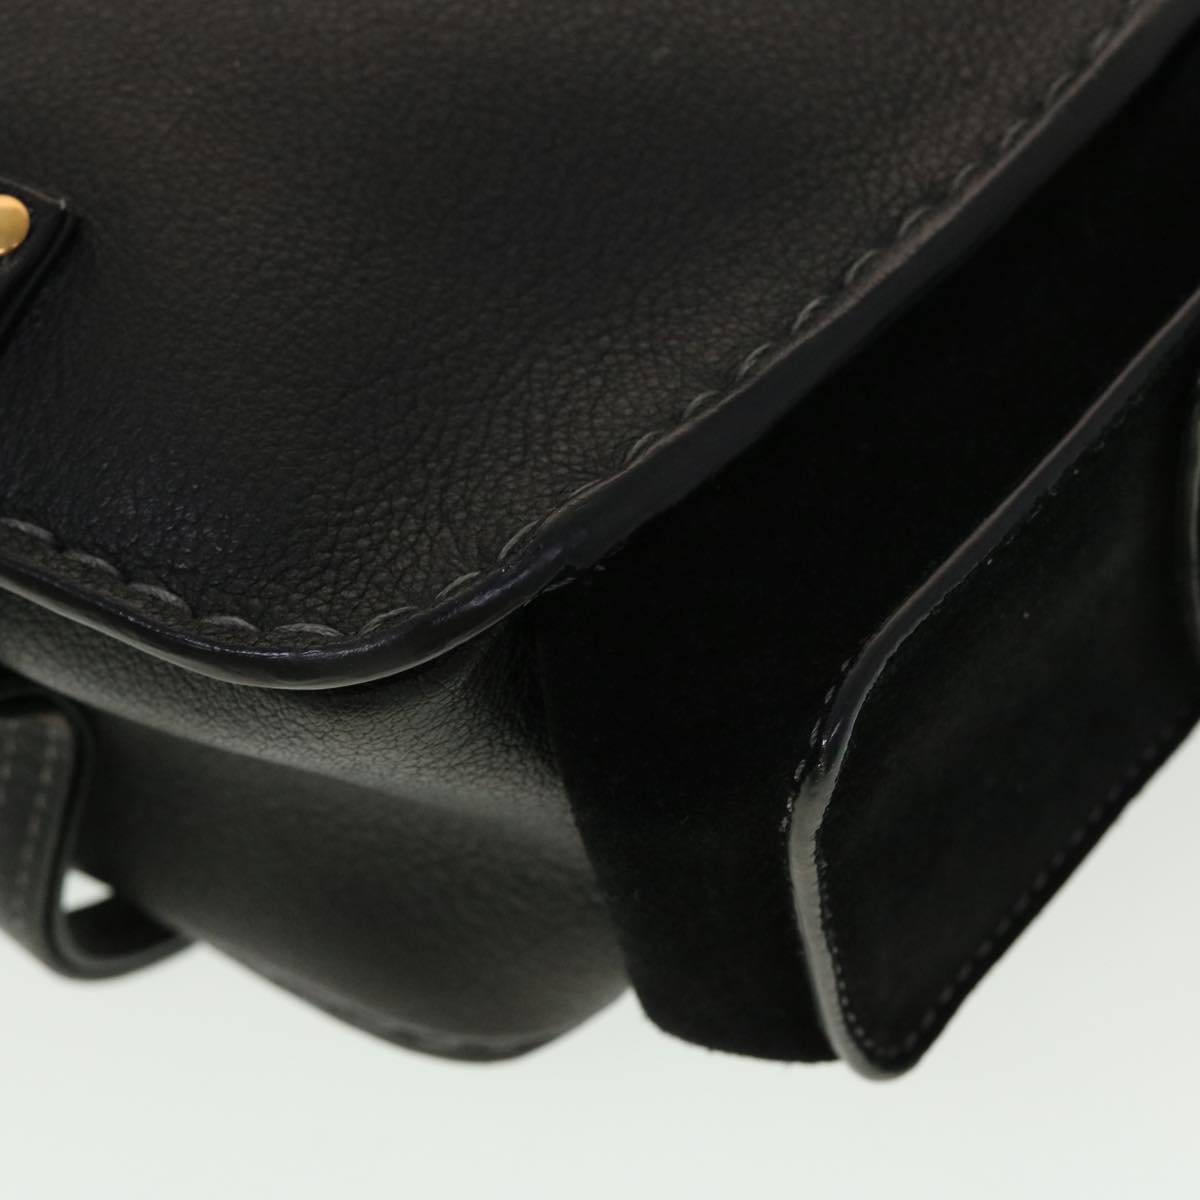 Chloe Shoulder Bag Leather Black Auth 45304